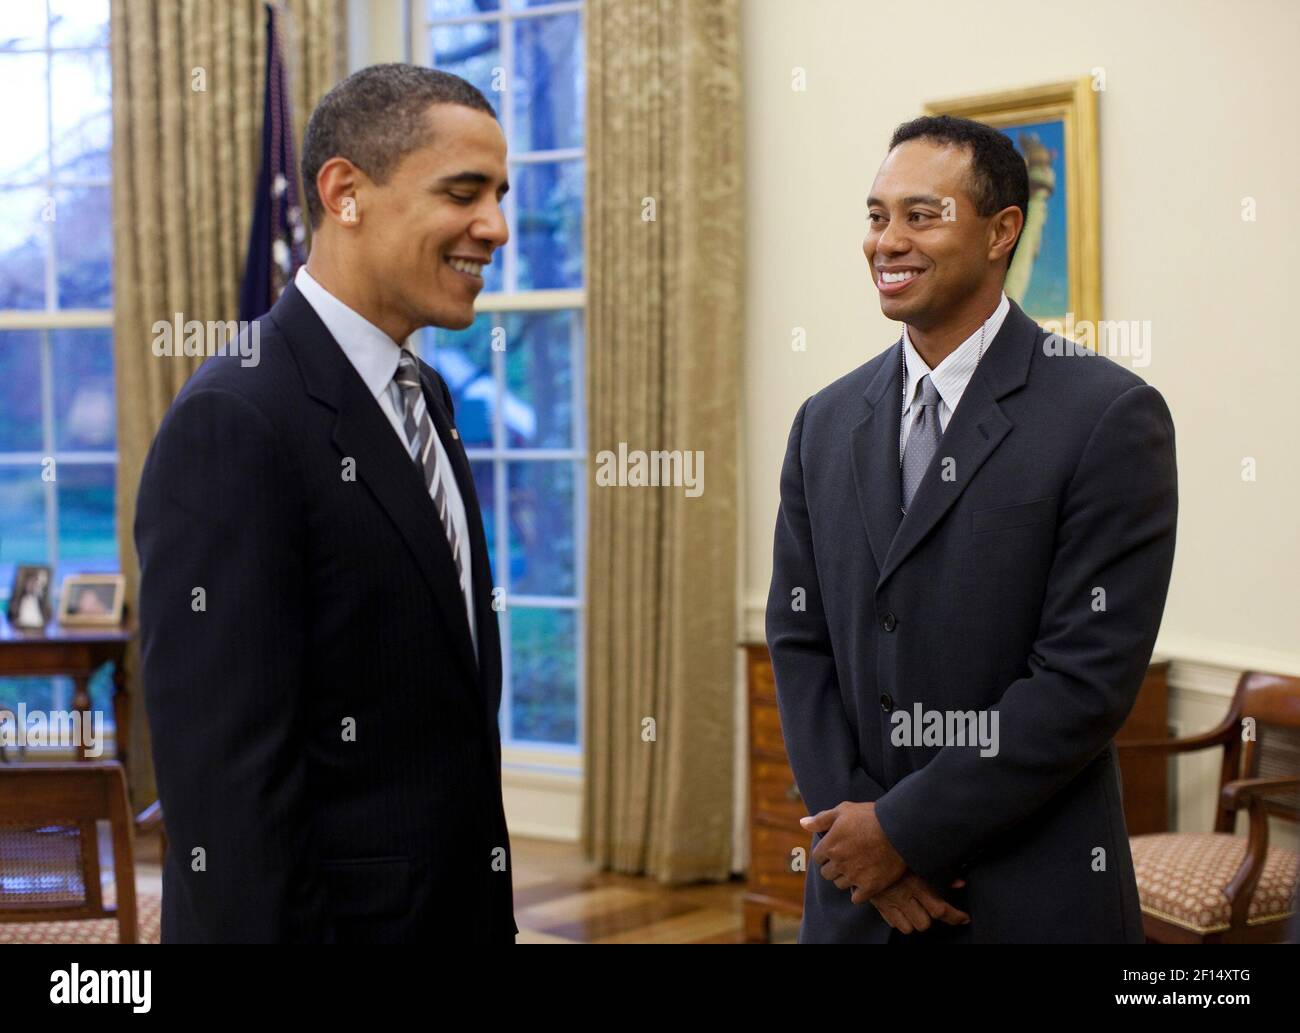 Il presidente Barack Obama saluta il golfer professionista Tiger Woods nell'ufficio ovale lunedì 20 aprile 2009. Il 14 volte vincitore principale ha visitato la Casa Bianca Lunedi dopo una conferenza stampa per L'AT&T National, l'evento PGA Tour Woods ospita al Congressional Country Club 29 giugno-5 luglio. Foto ufficiale della Casa Bianca di Pete Souza Foto Stock